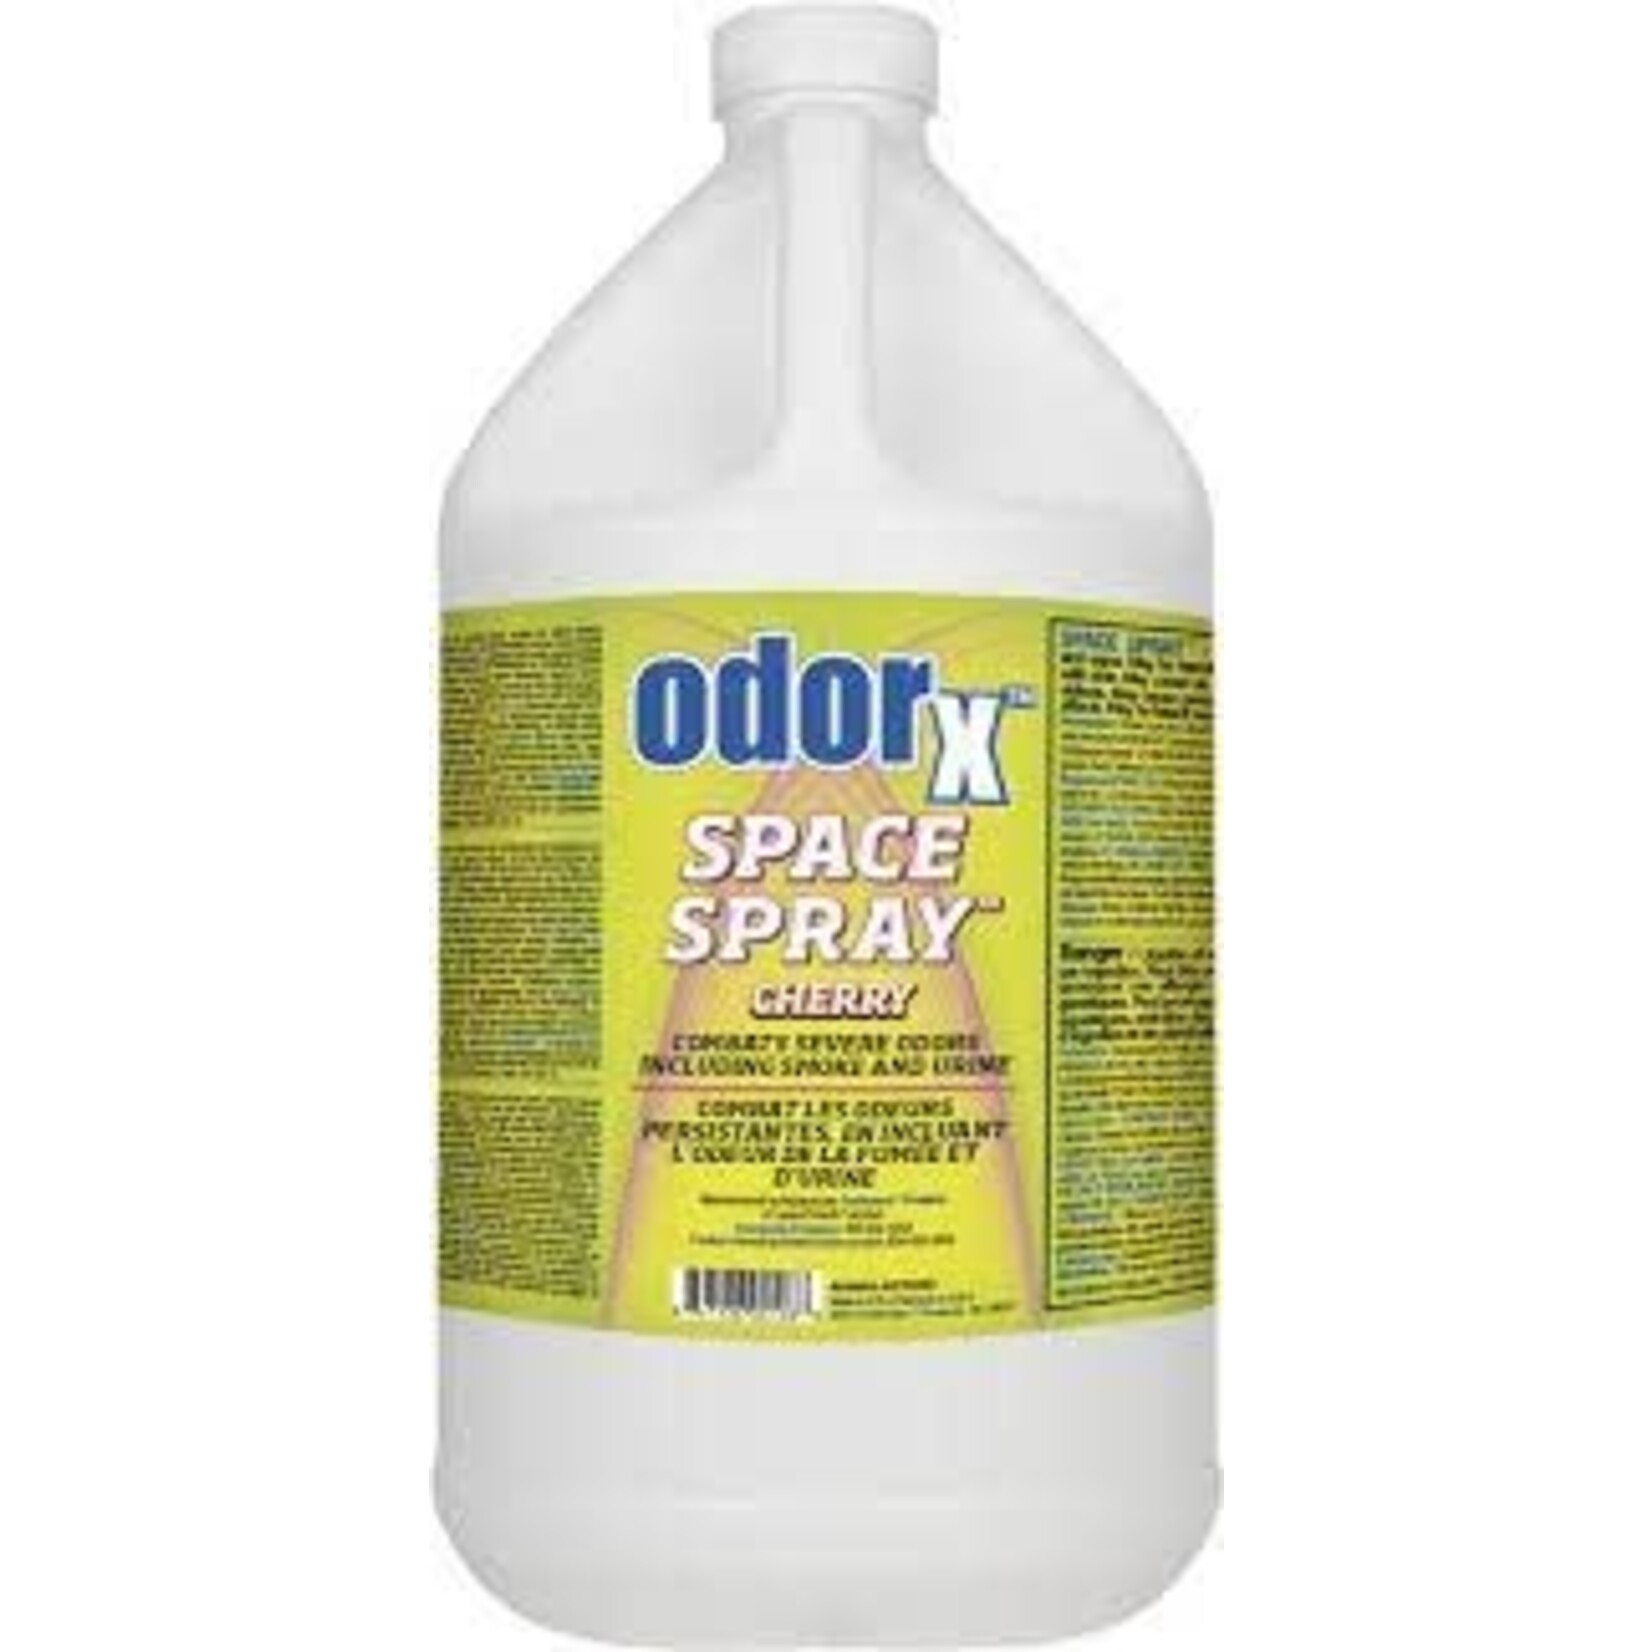 OdorX Space Spray Cherry 1 Gal.